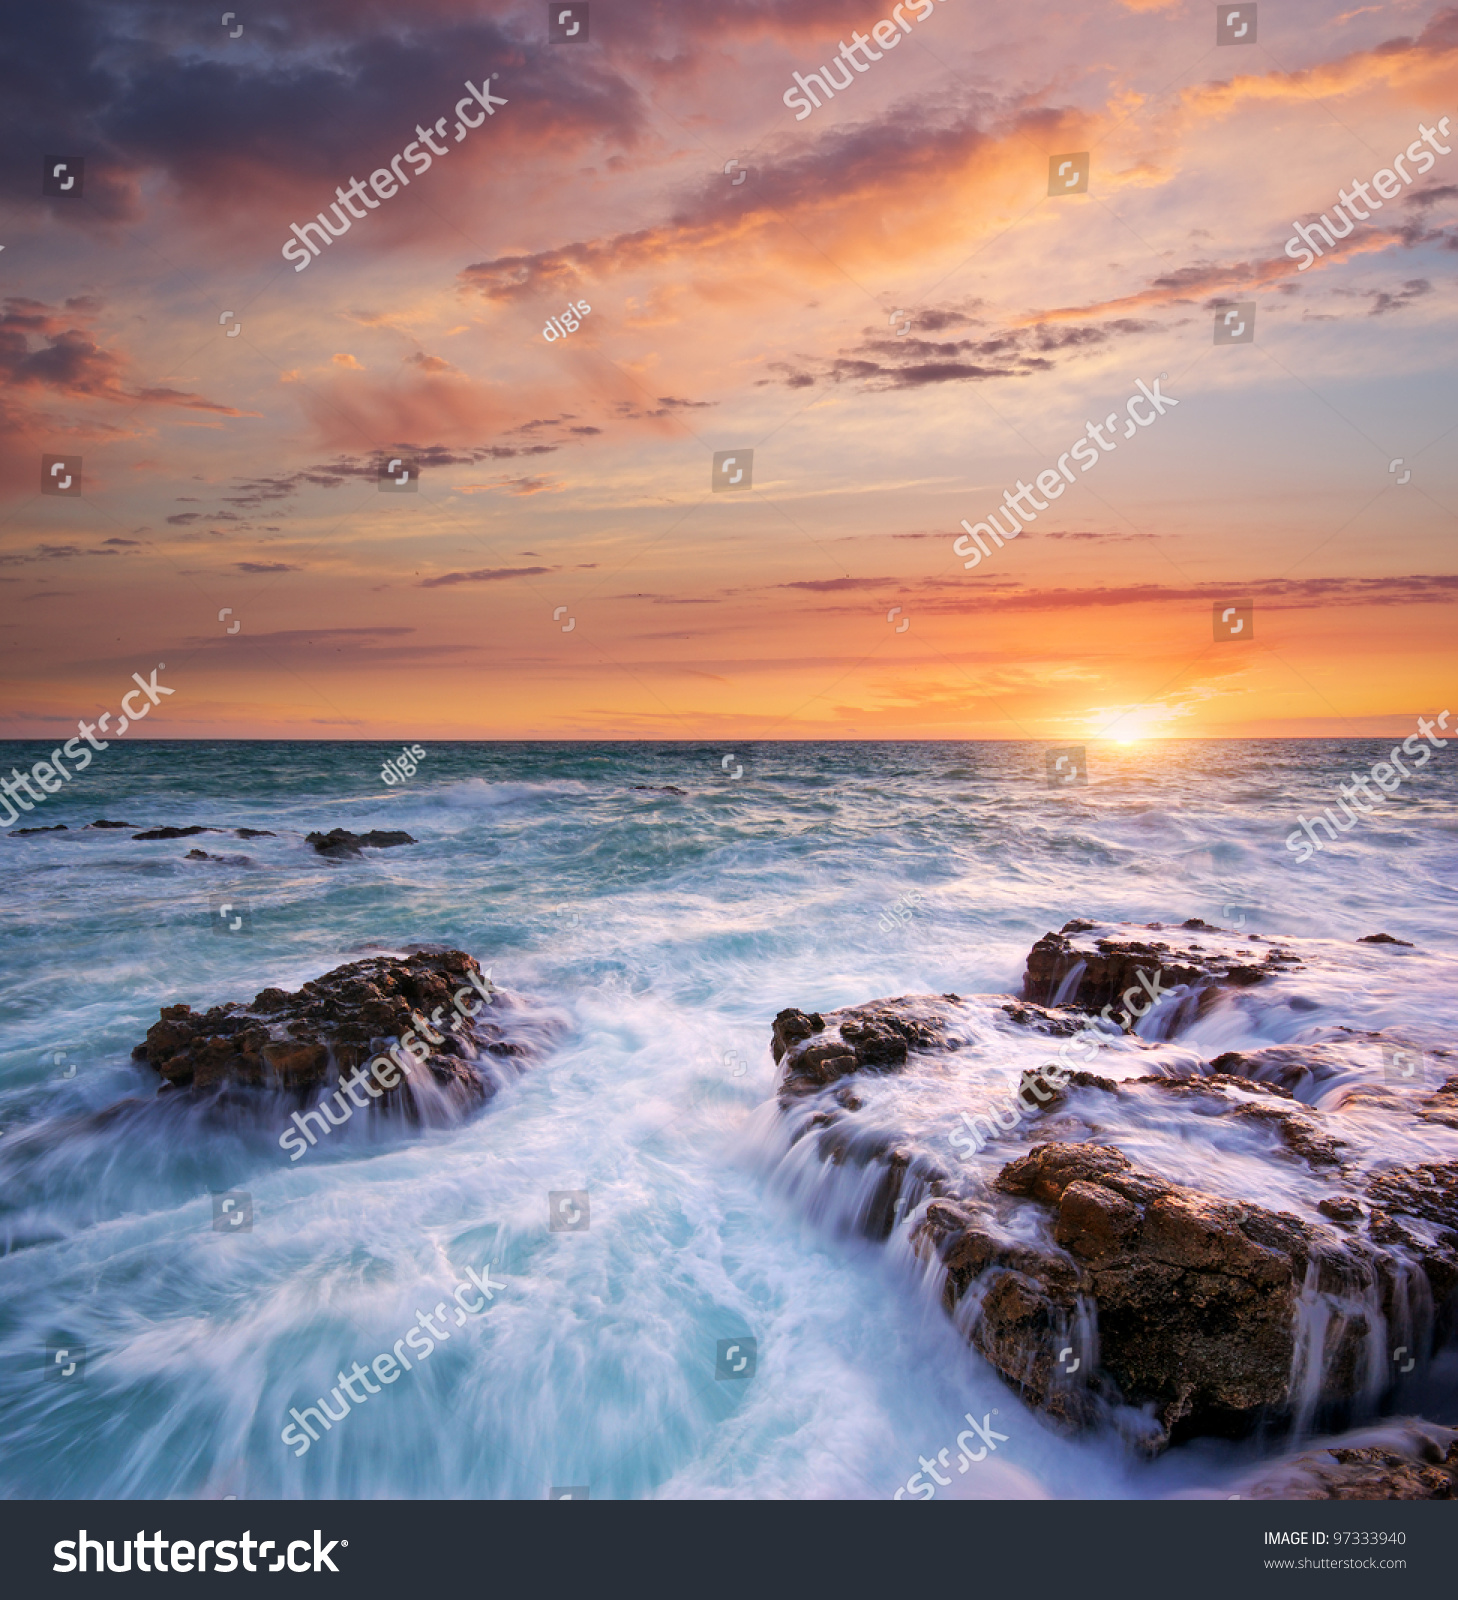 Beautiful seascape photo